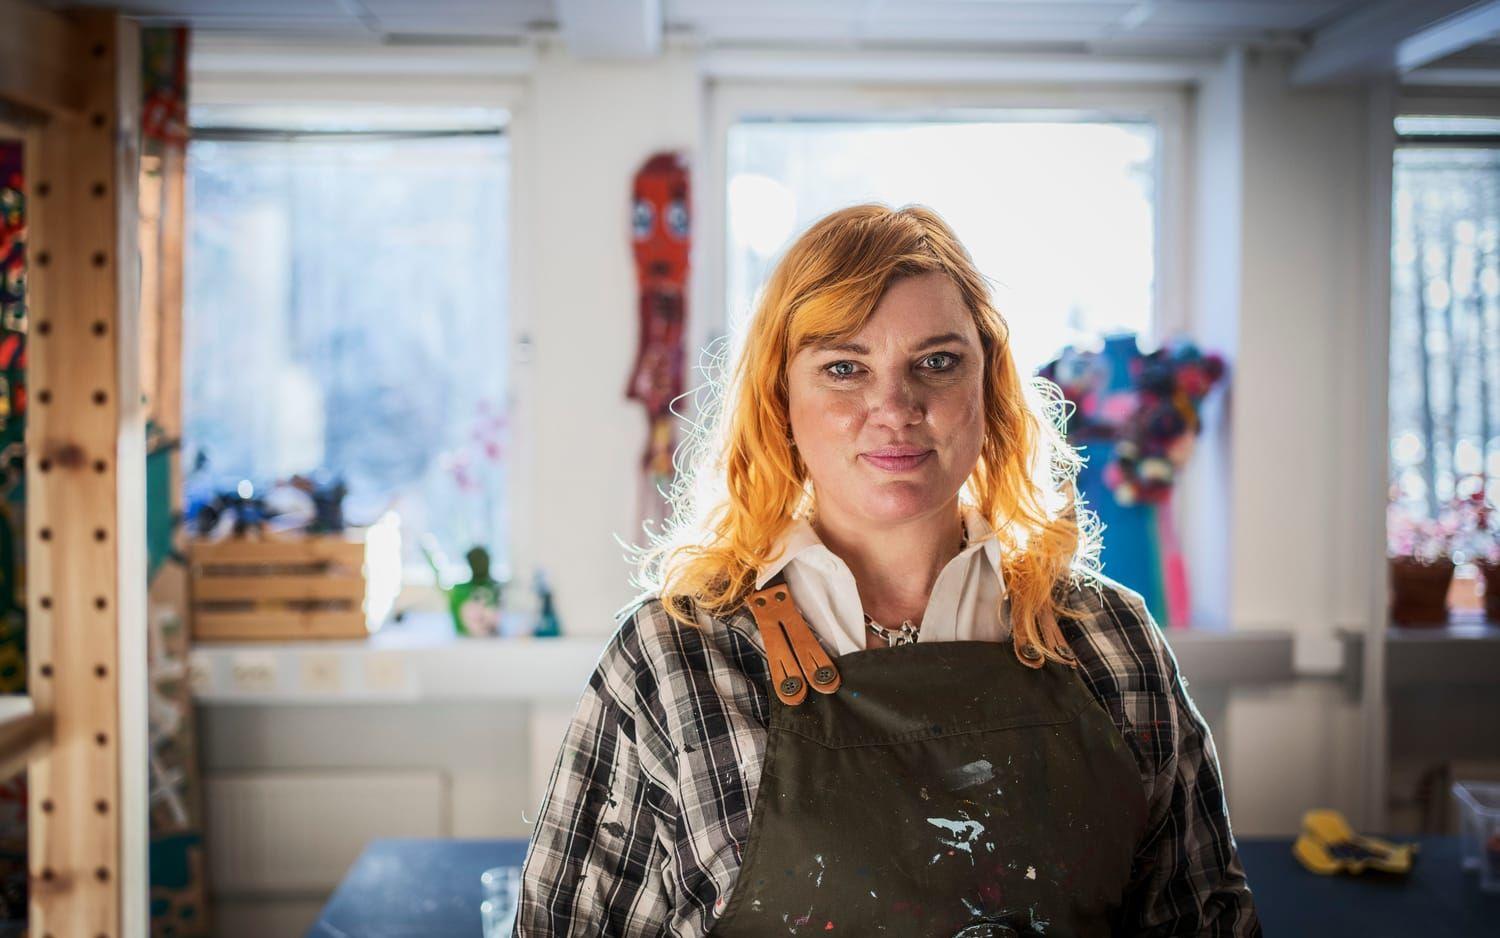 Konstnären Åsa-Hanna Nordenmark är aktivitetshandledare på Kulturlabbet, som 22 december fick ta emot beställningen på Guldbaggekjolen.  ”Vi är jätteglada över att få göra den och älskar när verk av våra konstnärer lyfts fram och får synas” säger hon.